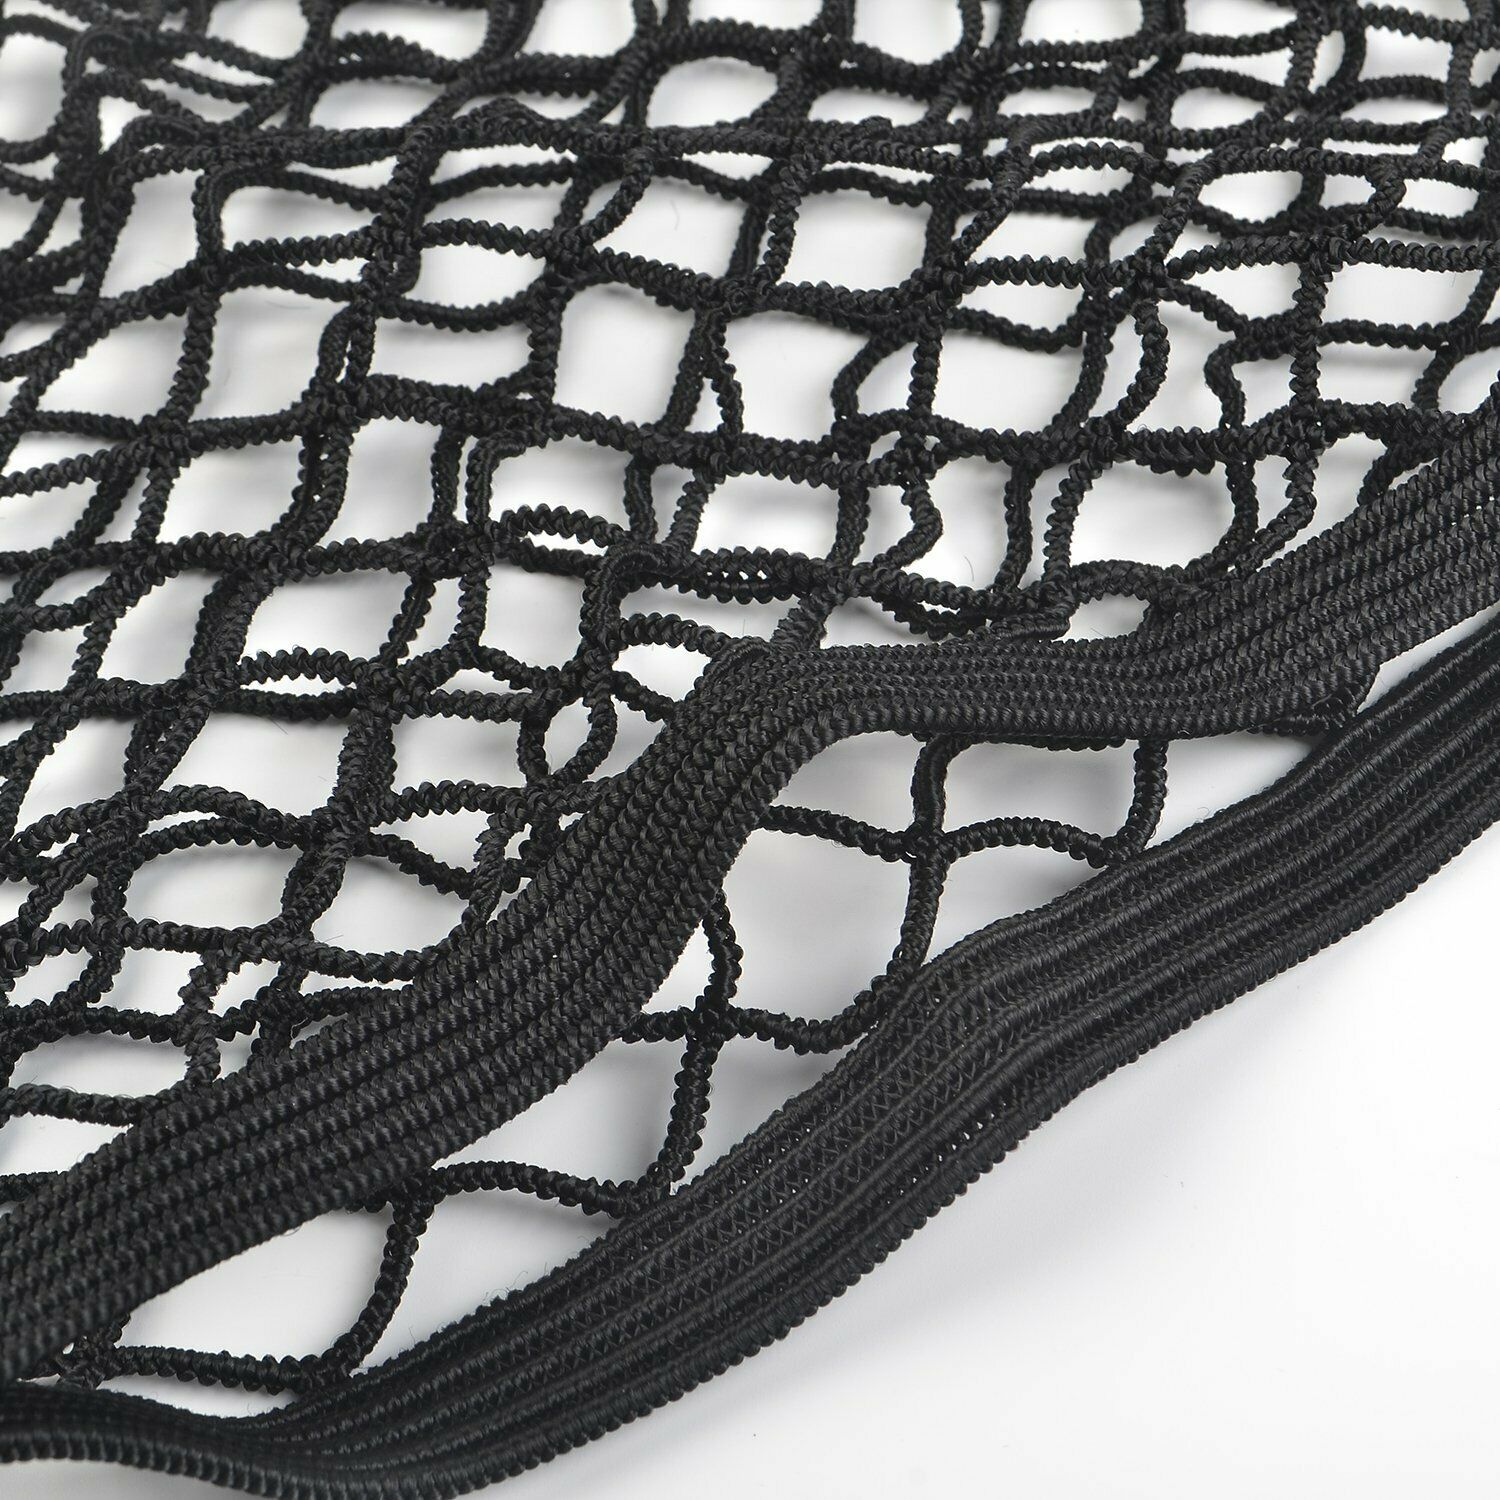 Für mehr Ordnung im Kofferraum - flexibel anbringbare Netze mit Klett